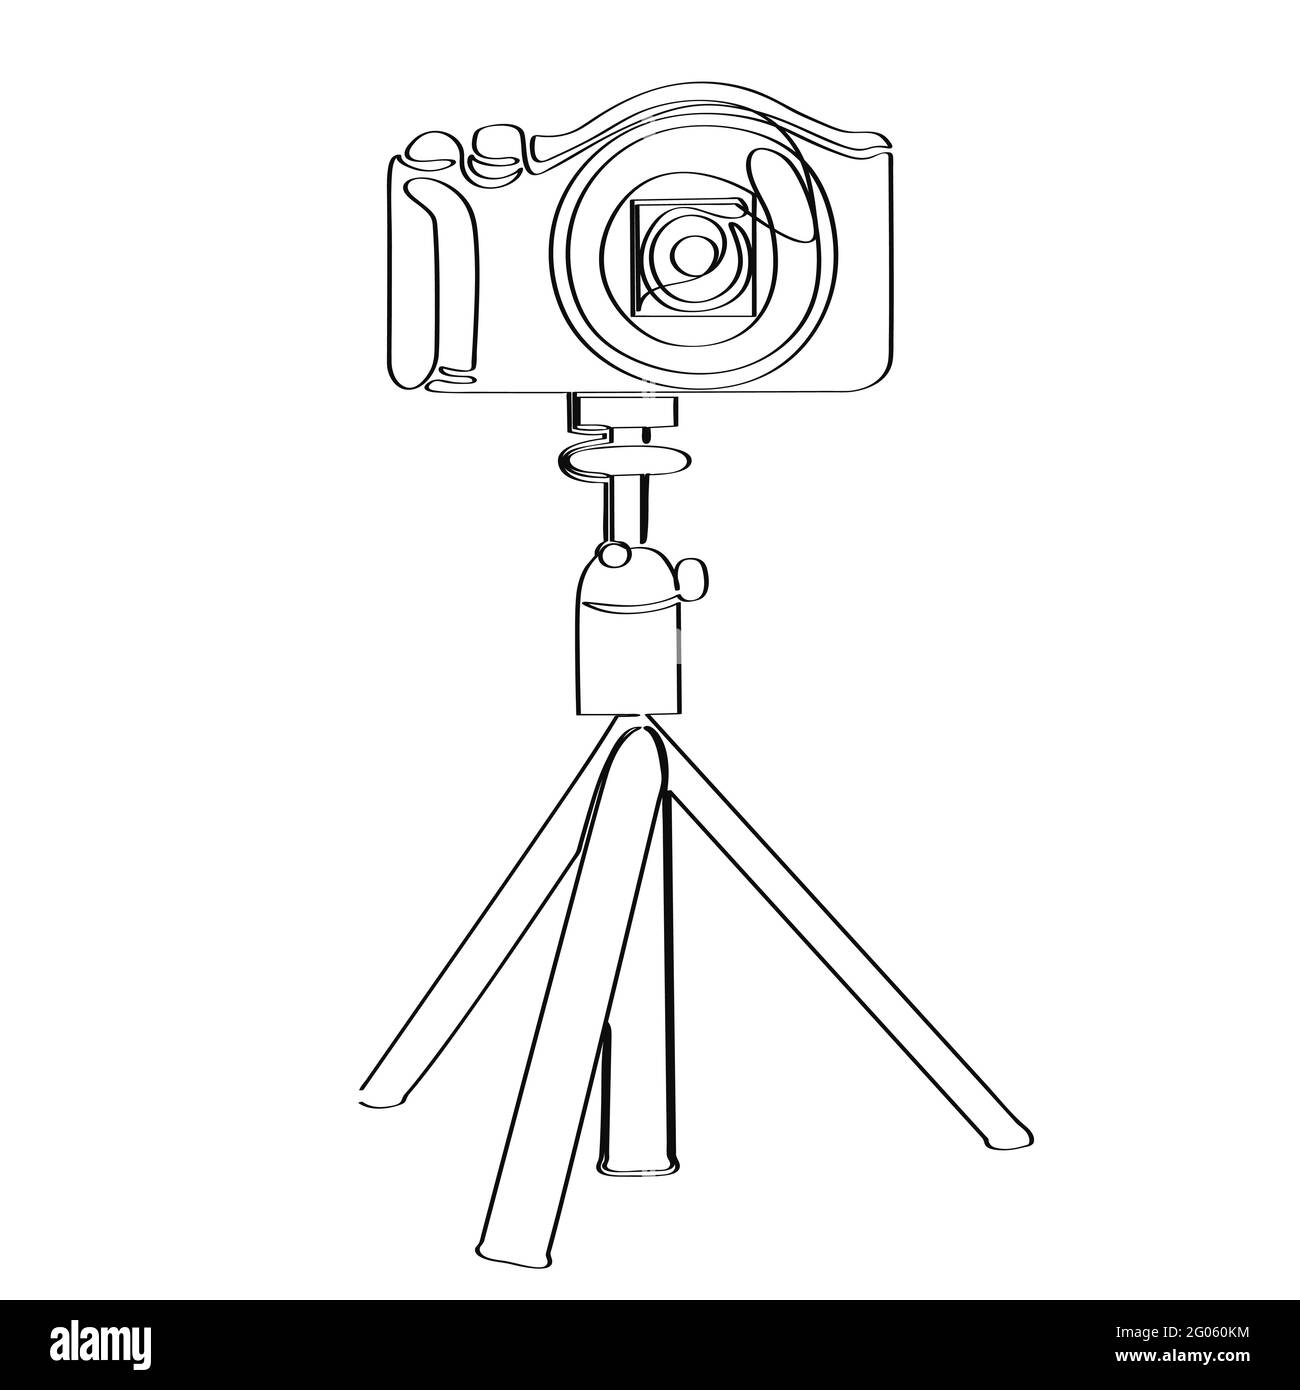 La Action Camera isolata su uno sfondo bianco viene disegnata con una sola linea continua. Illustrazione vettoriale stock Illustrazione Vettoriale